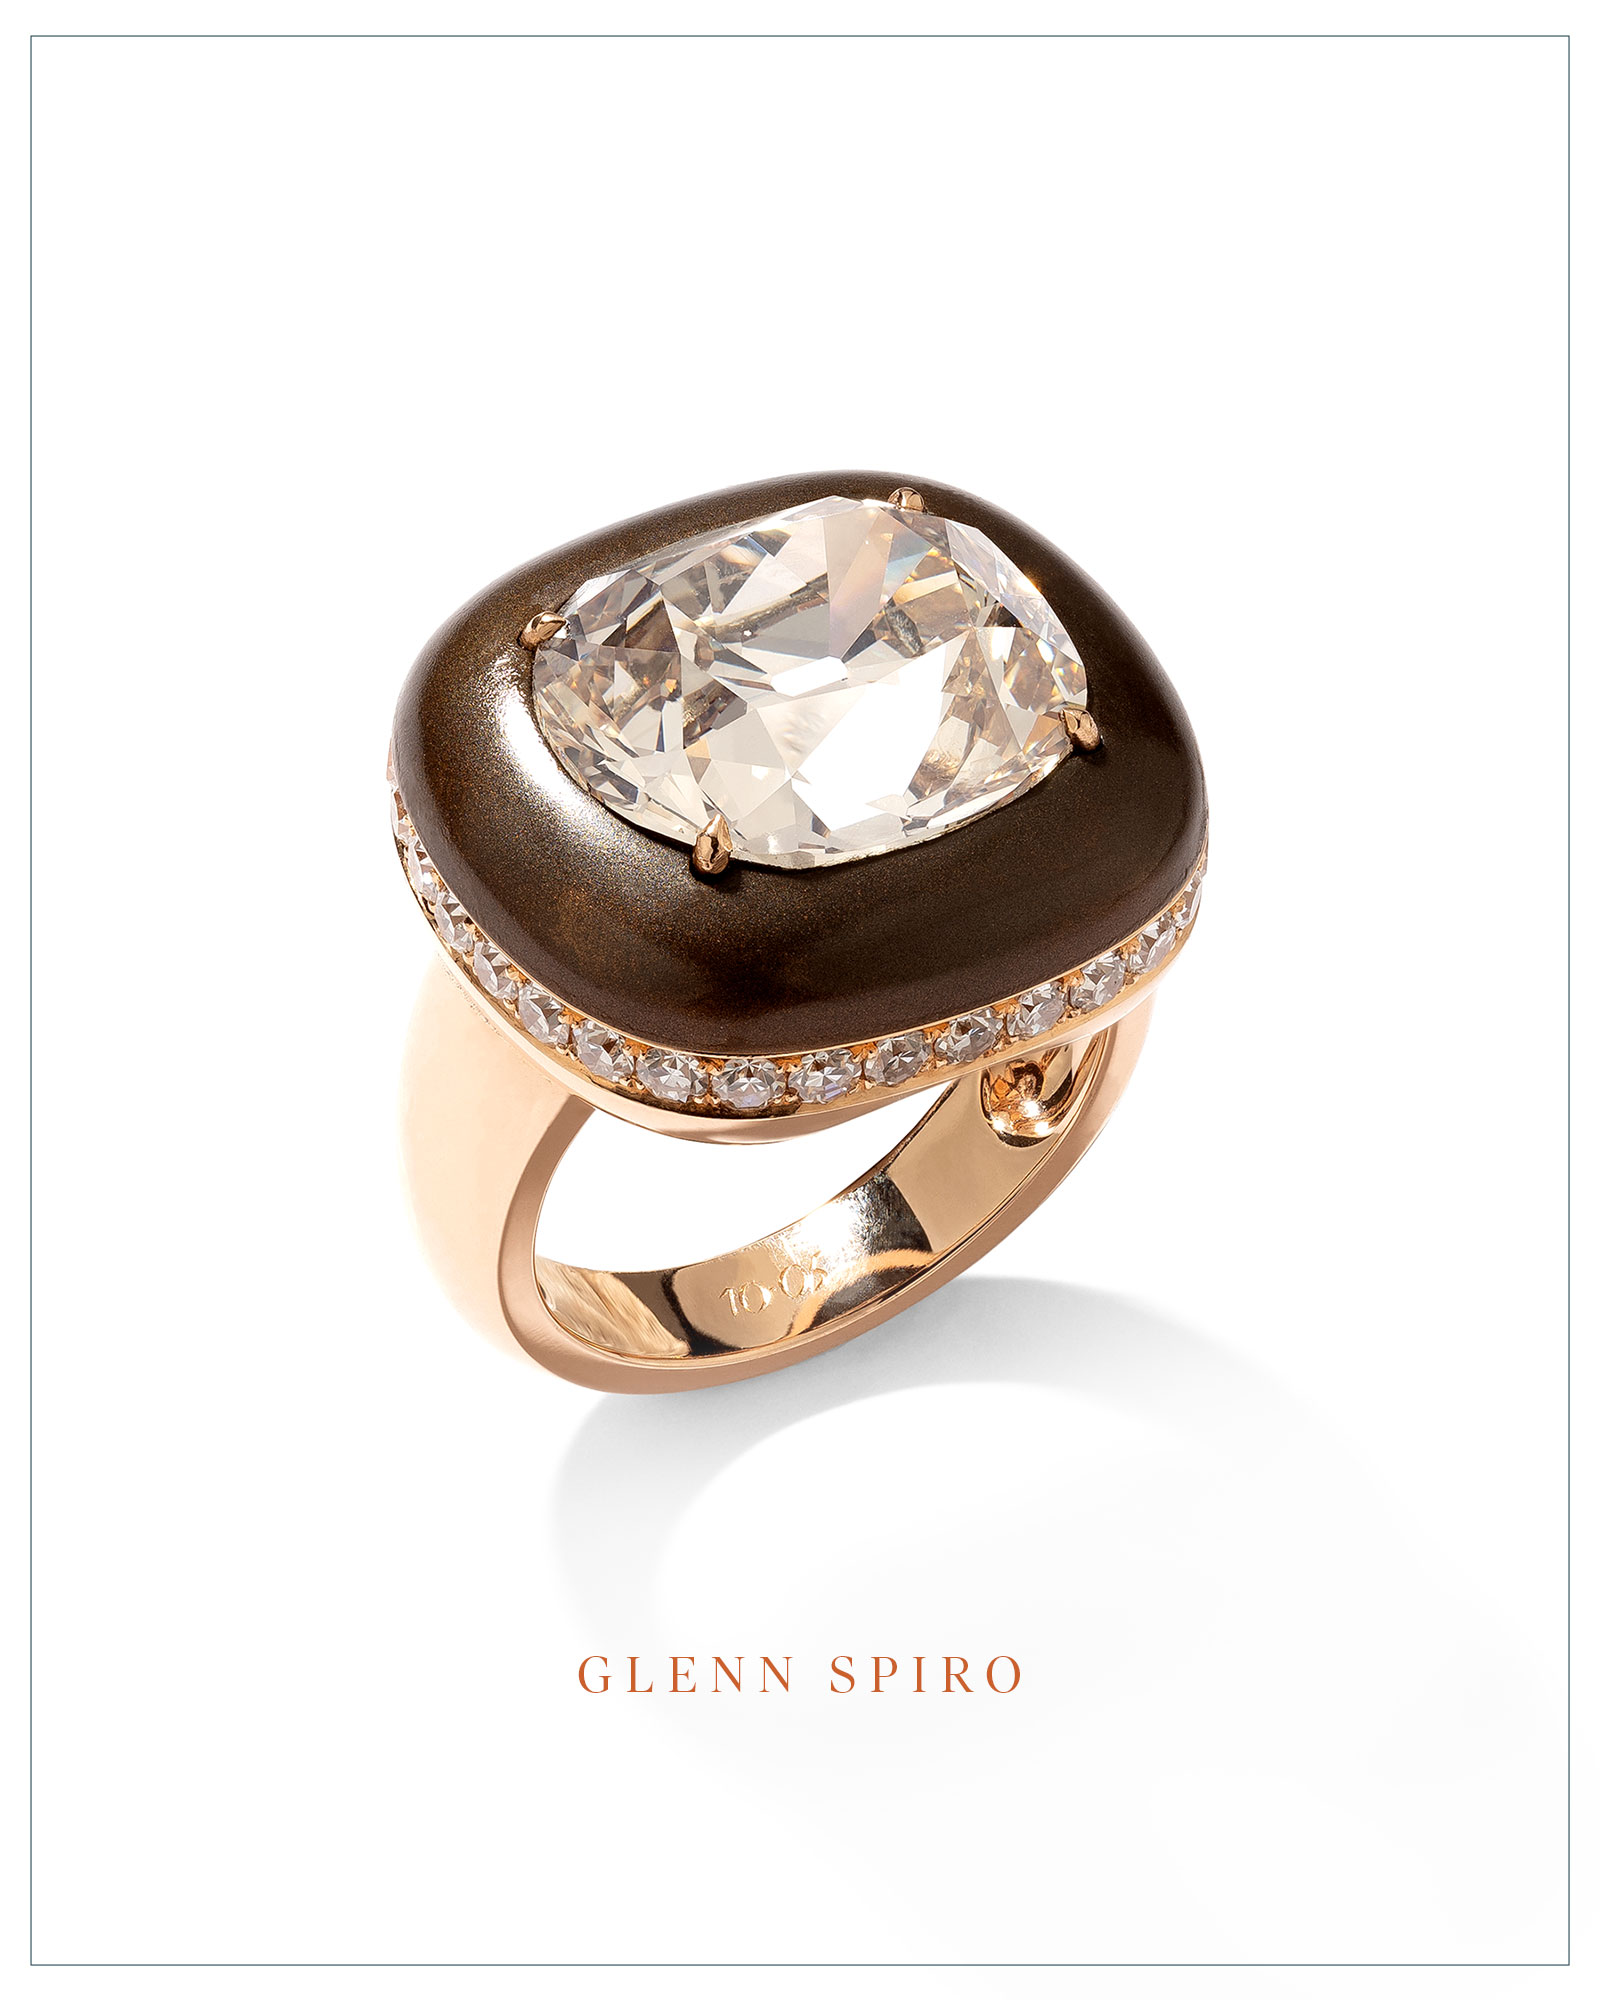 Glenn Spiro solitaire ring